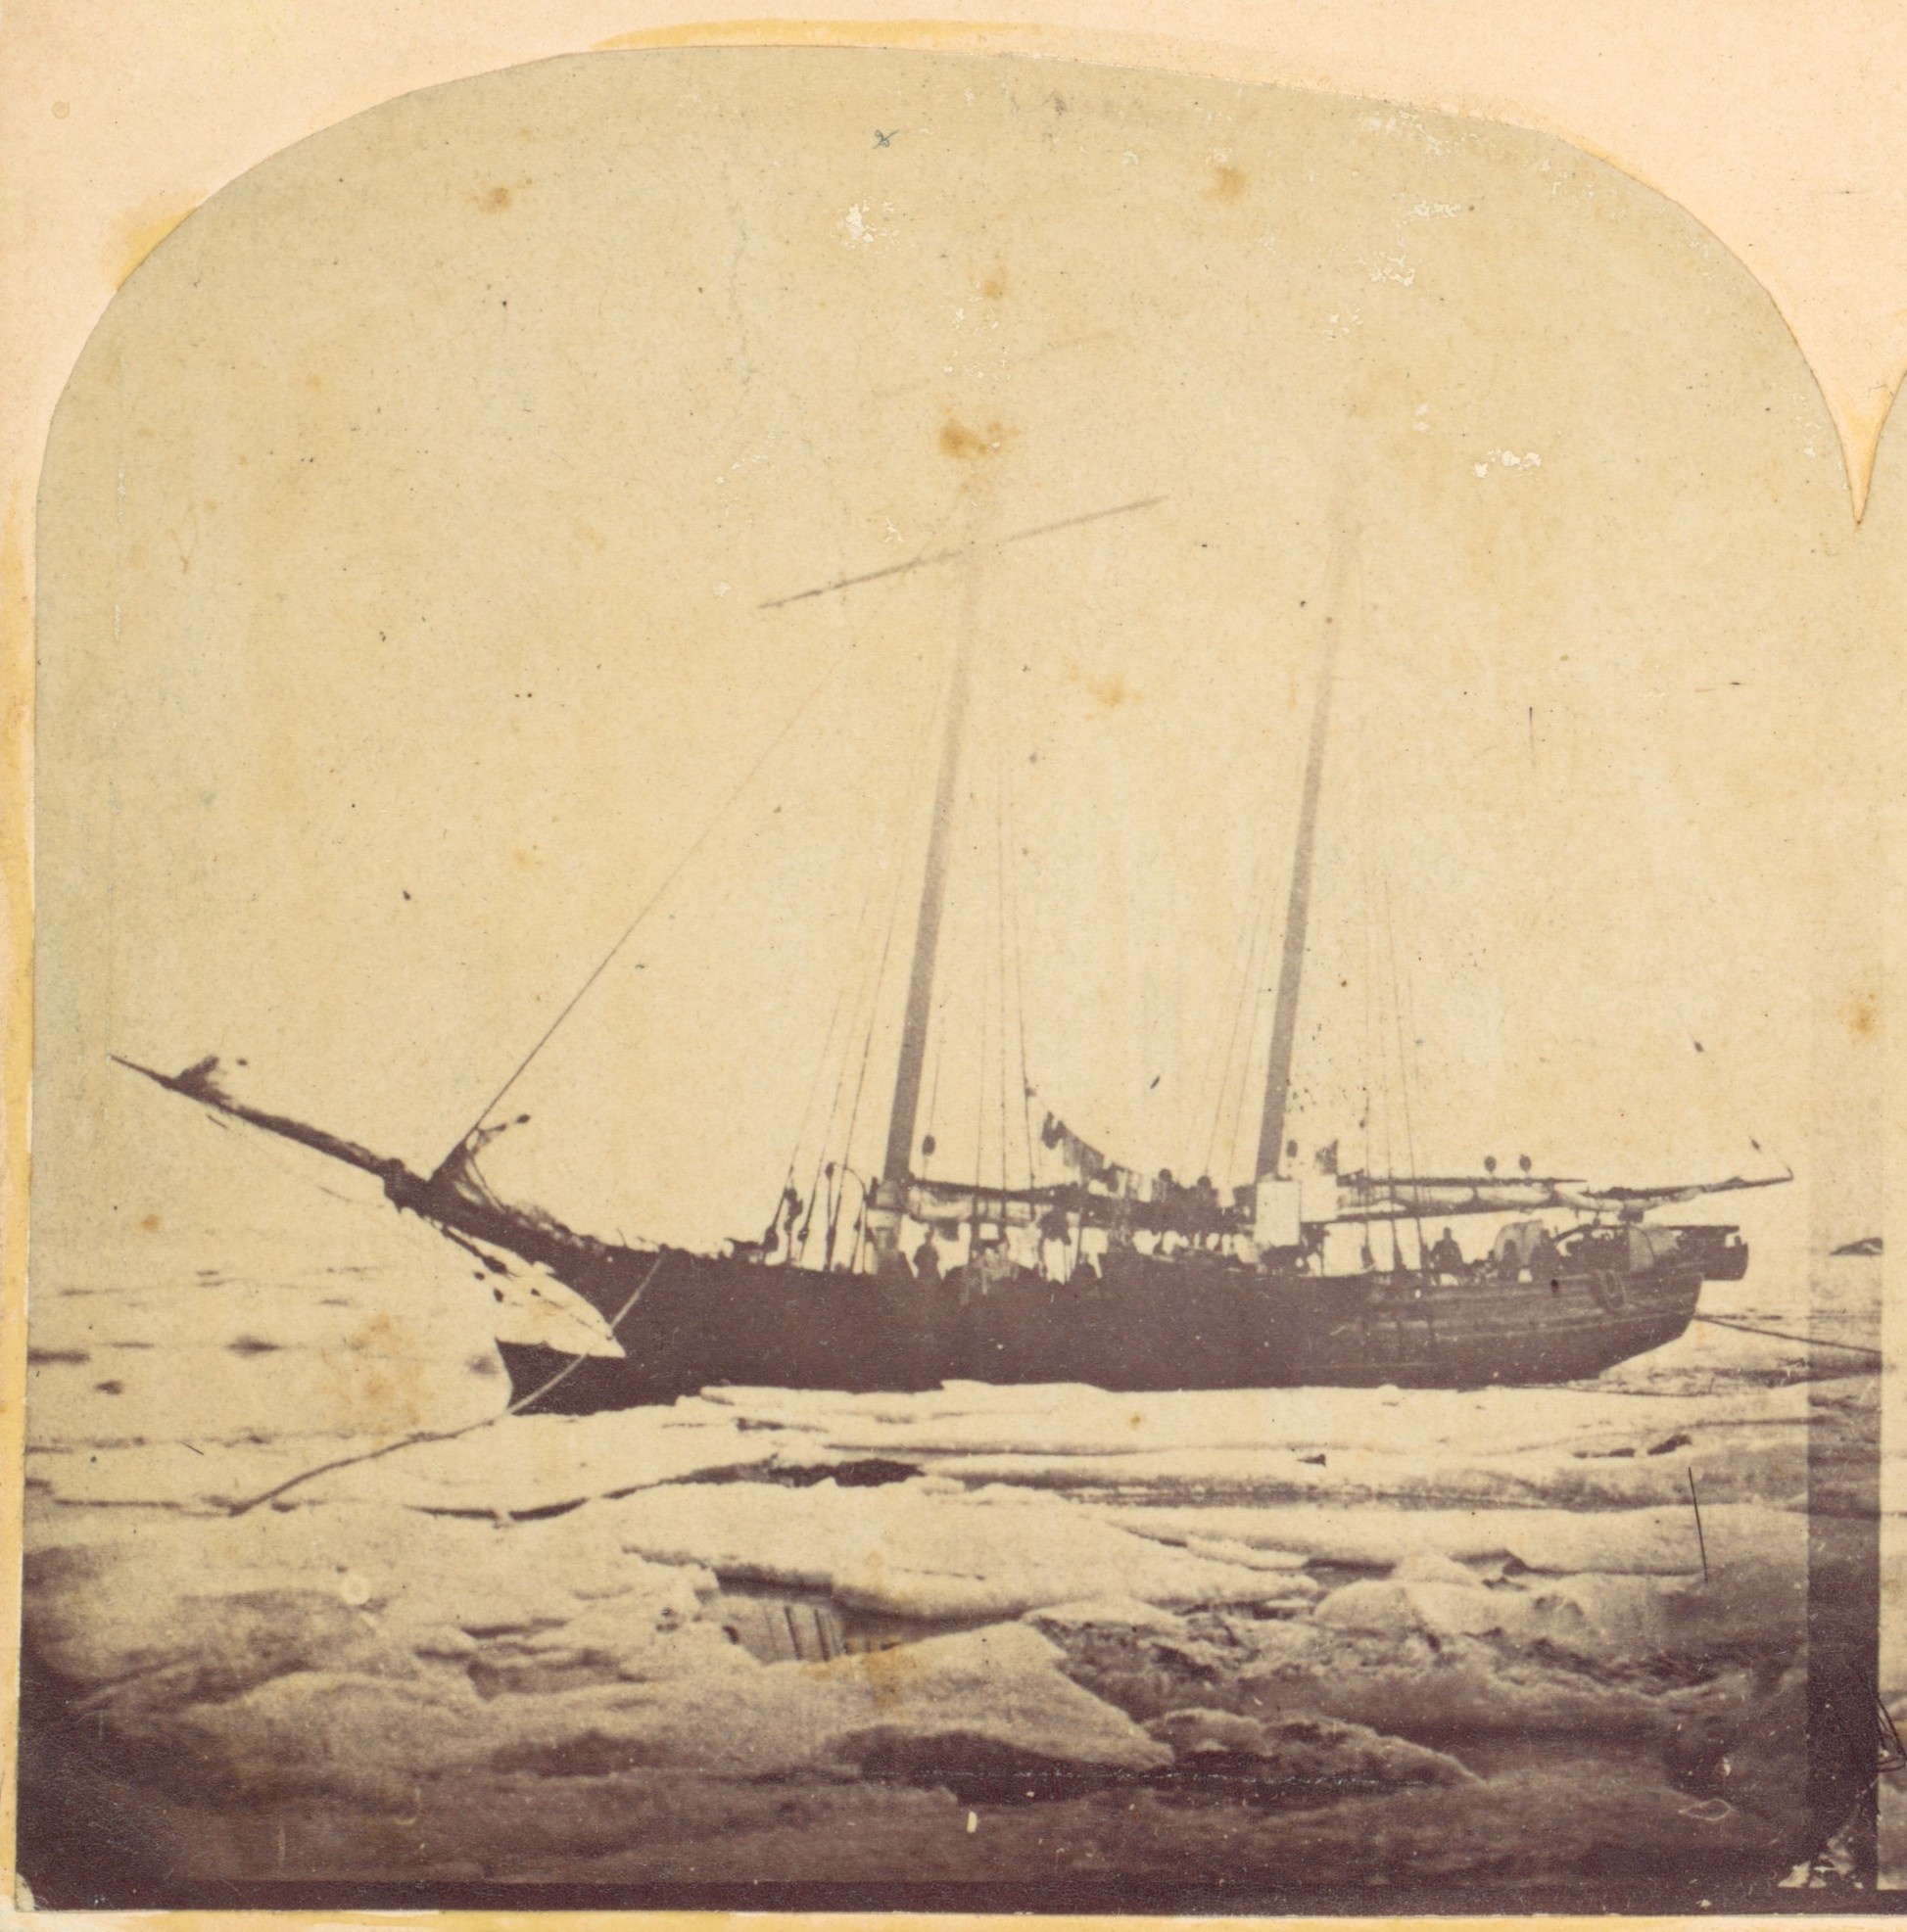 Ein zweimastiges Schiff, auf dem die Silhouetten von Menschen zu erkennen sind, ist umgeben von Eis und Schnee. © Wikipedia